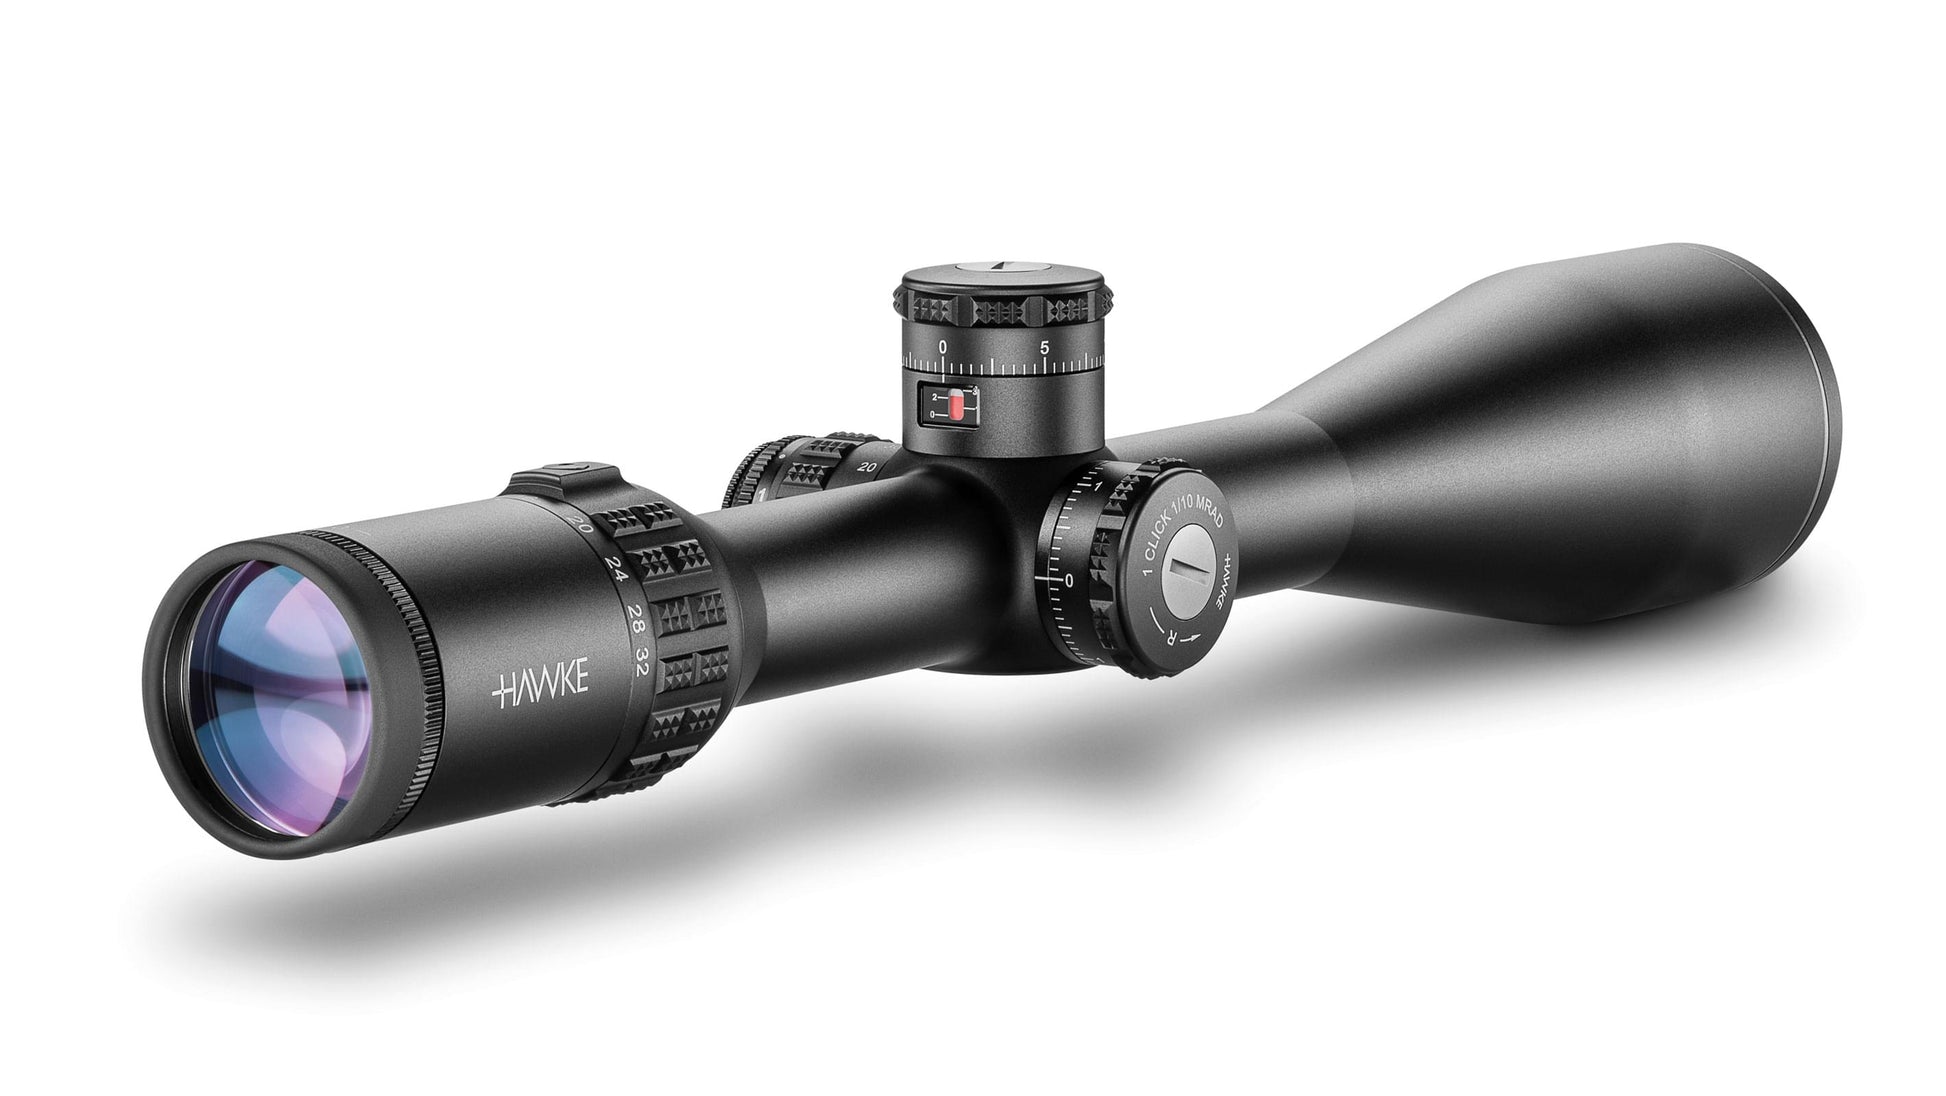 4-16X50 scope chasse tactique optique viseur airsoft accessoires